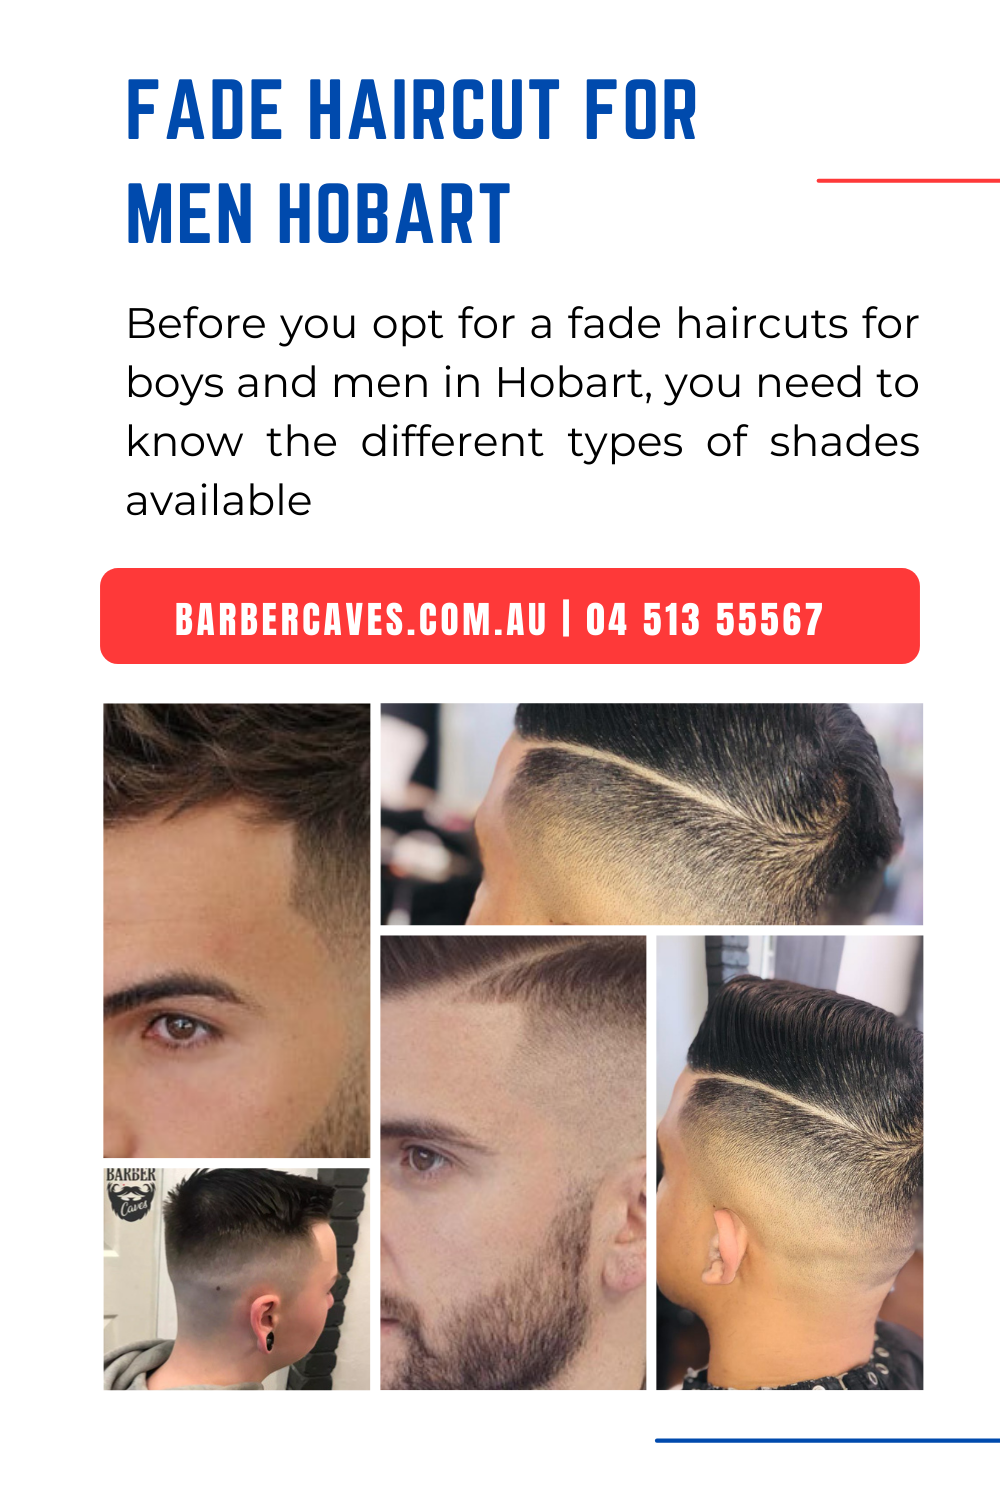 Fade Haircut for Men Hobart